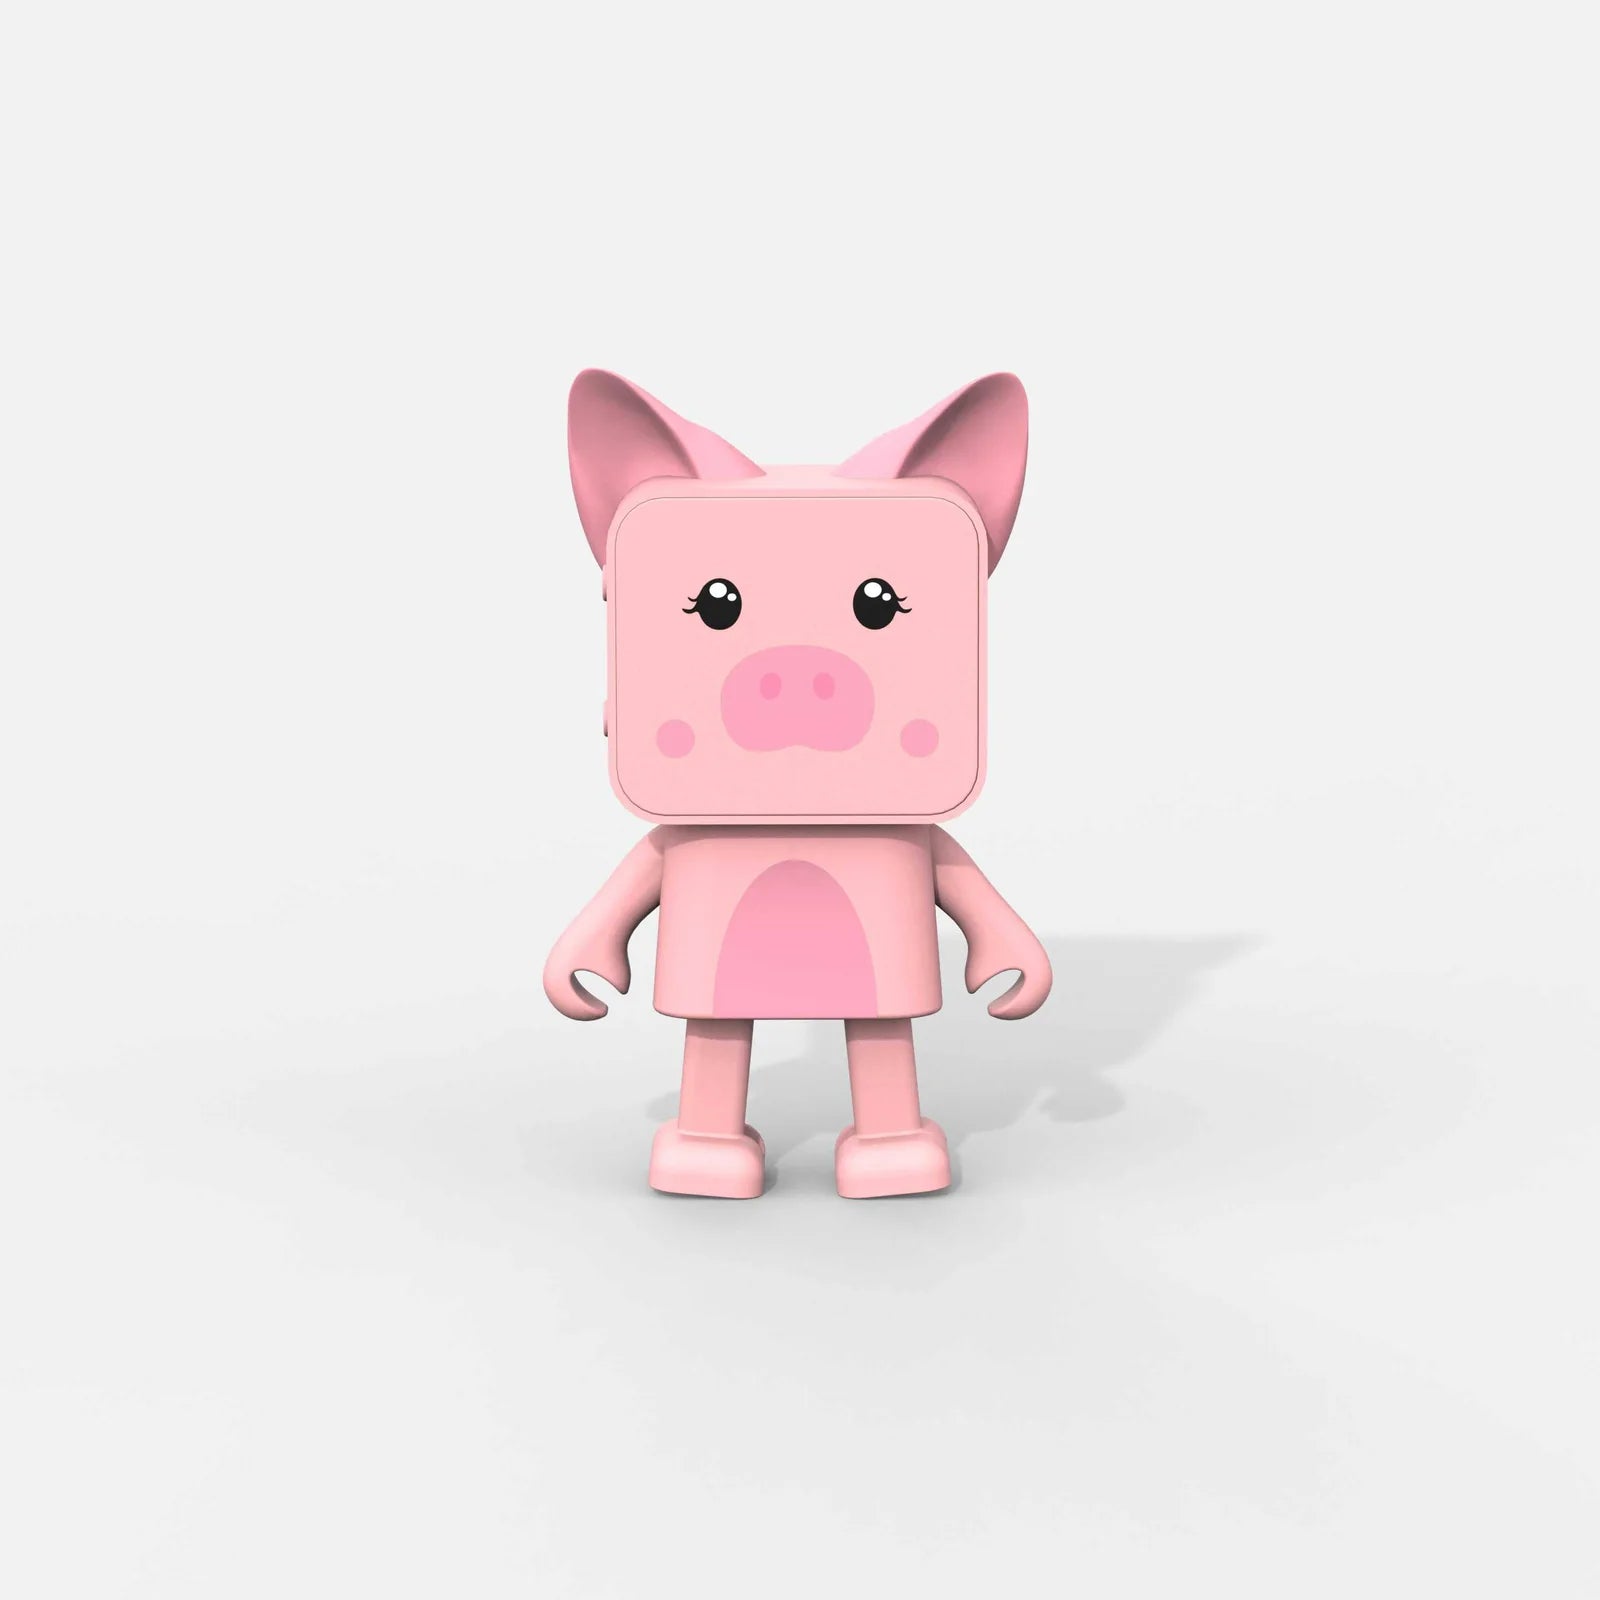 MoB - bluetooth speaker - dancing pig